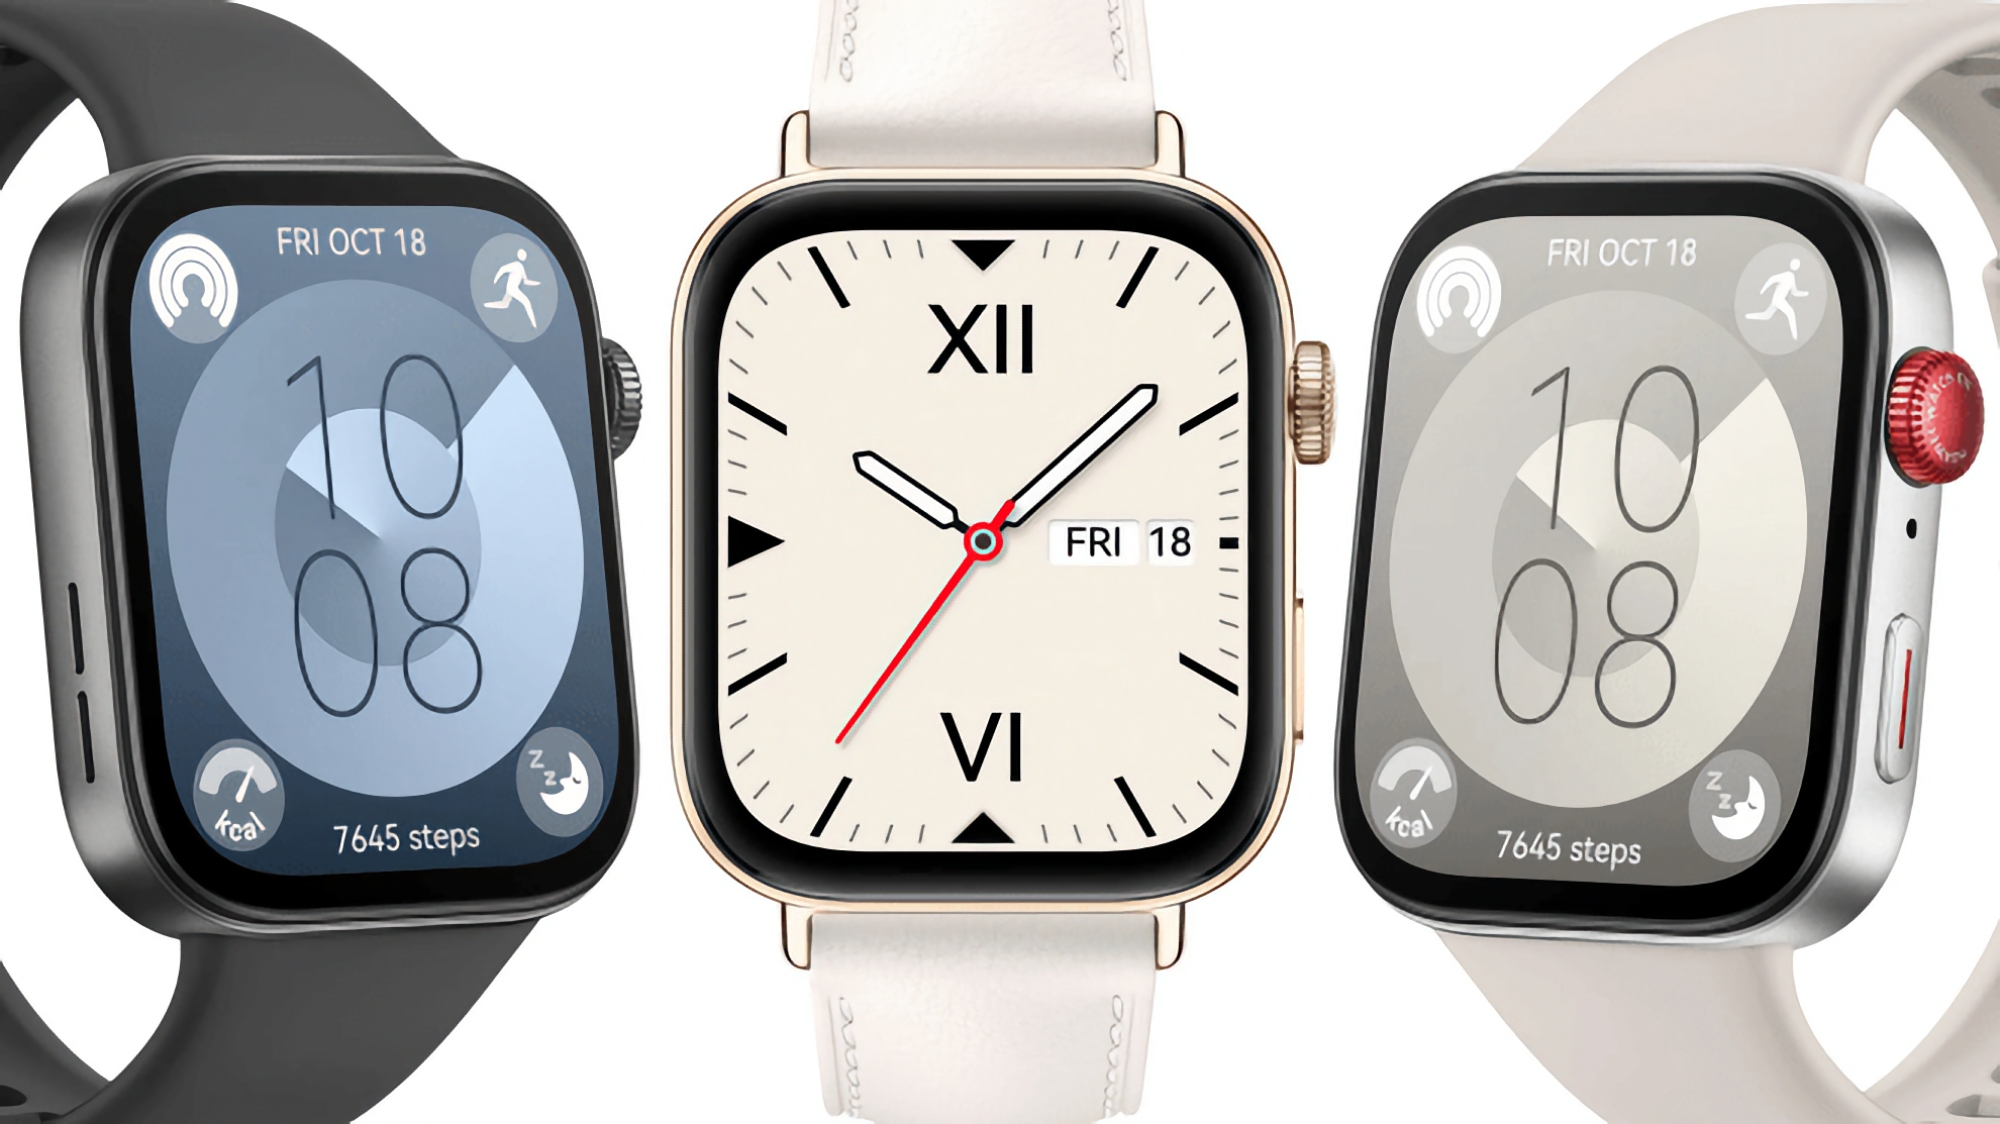 Три цвета, дизайн в стиле Apple Watch, автономность до 10 дней и цена от 159 евро: инсайдер раскрыл все подробности про Huawei Watch Fit 3